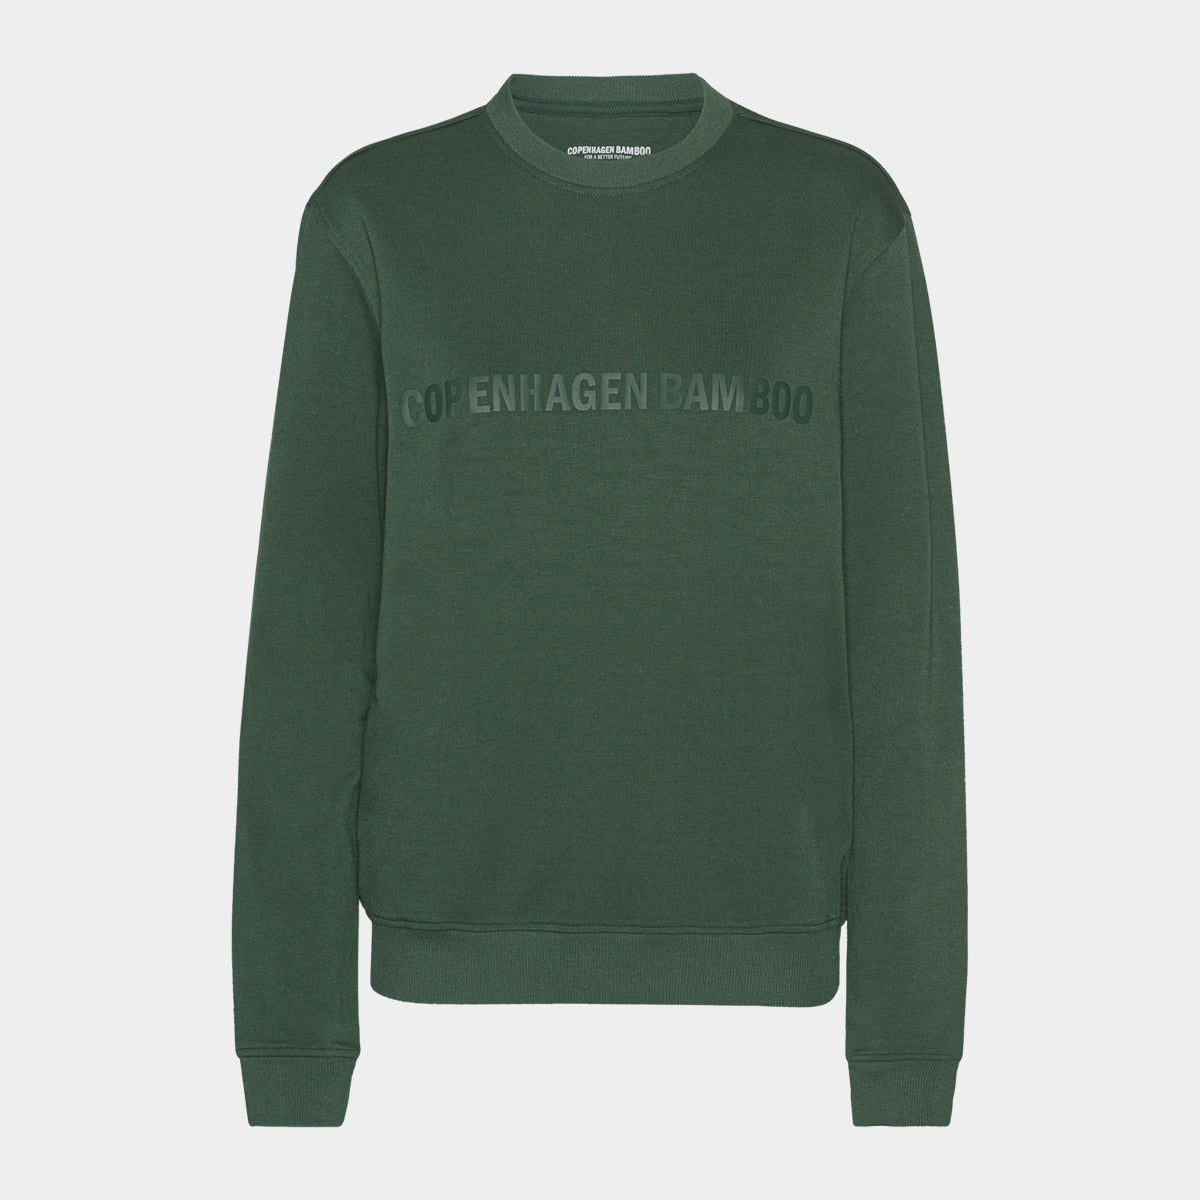 Se Grøn bambus sweatshirt til dame med logo fra Copenhagen Bamboo, XS hos Bambustøj.dk